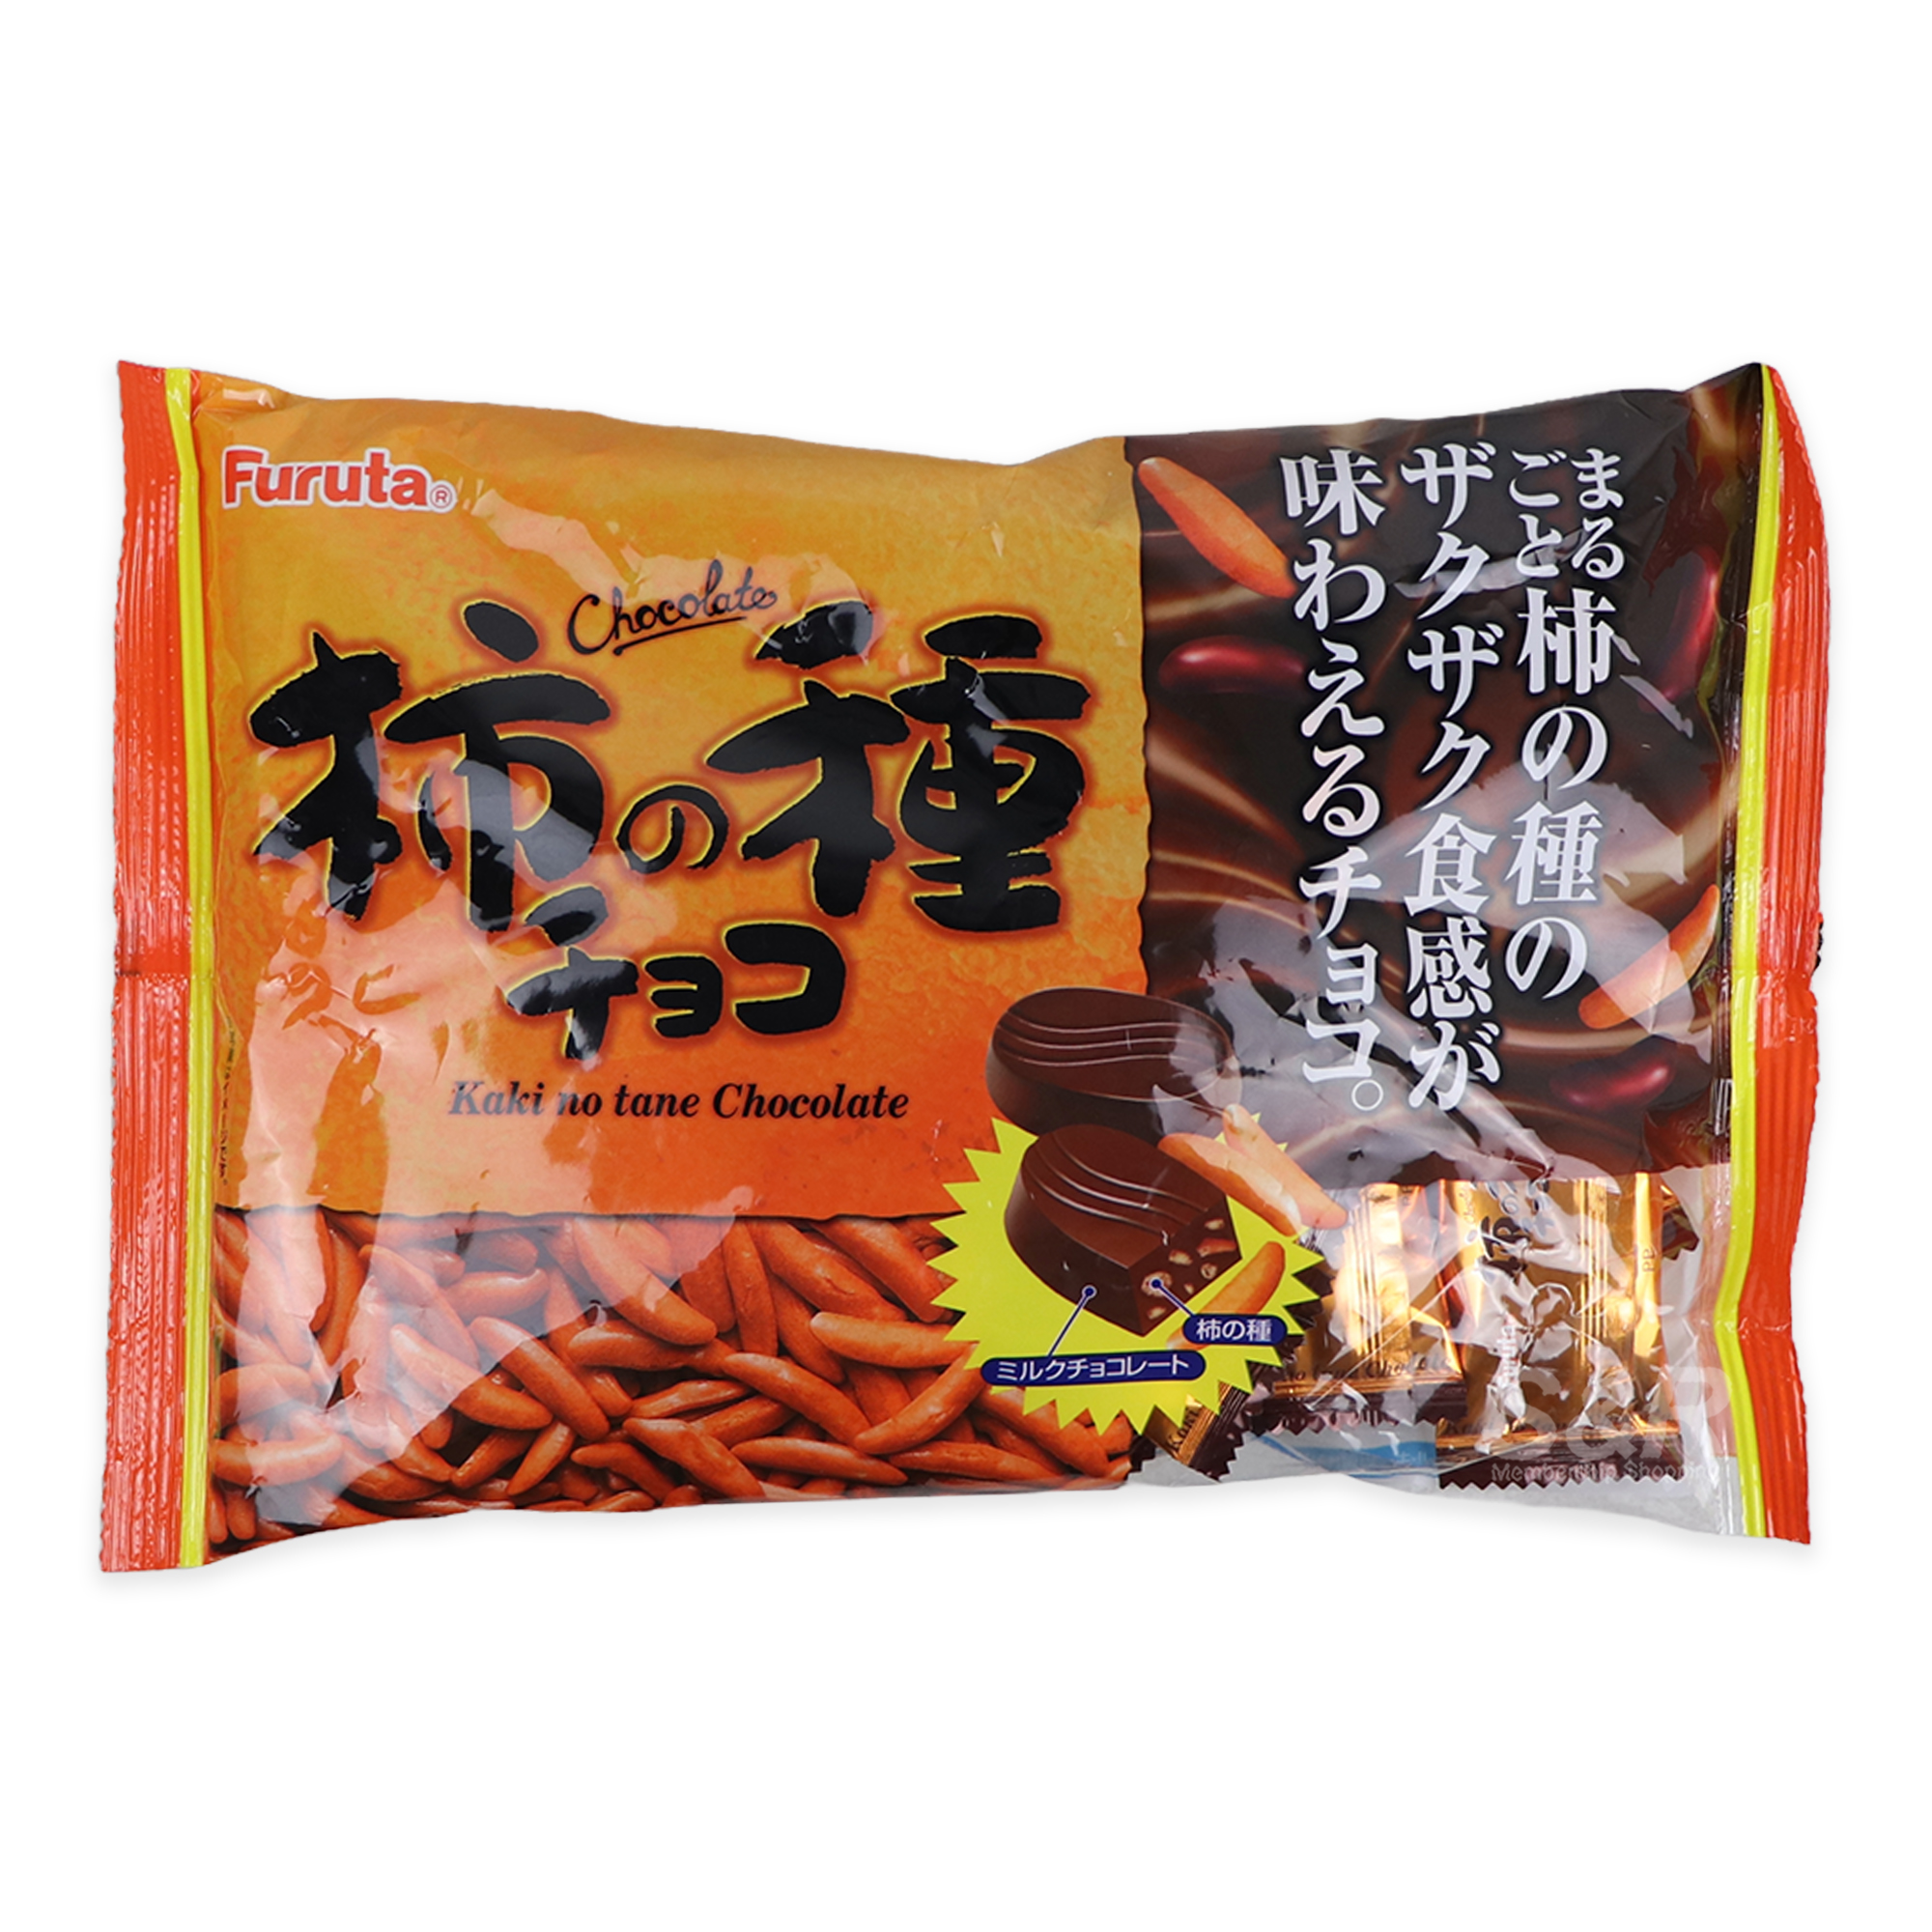 Furuta Kakinotane Chocolate 147g